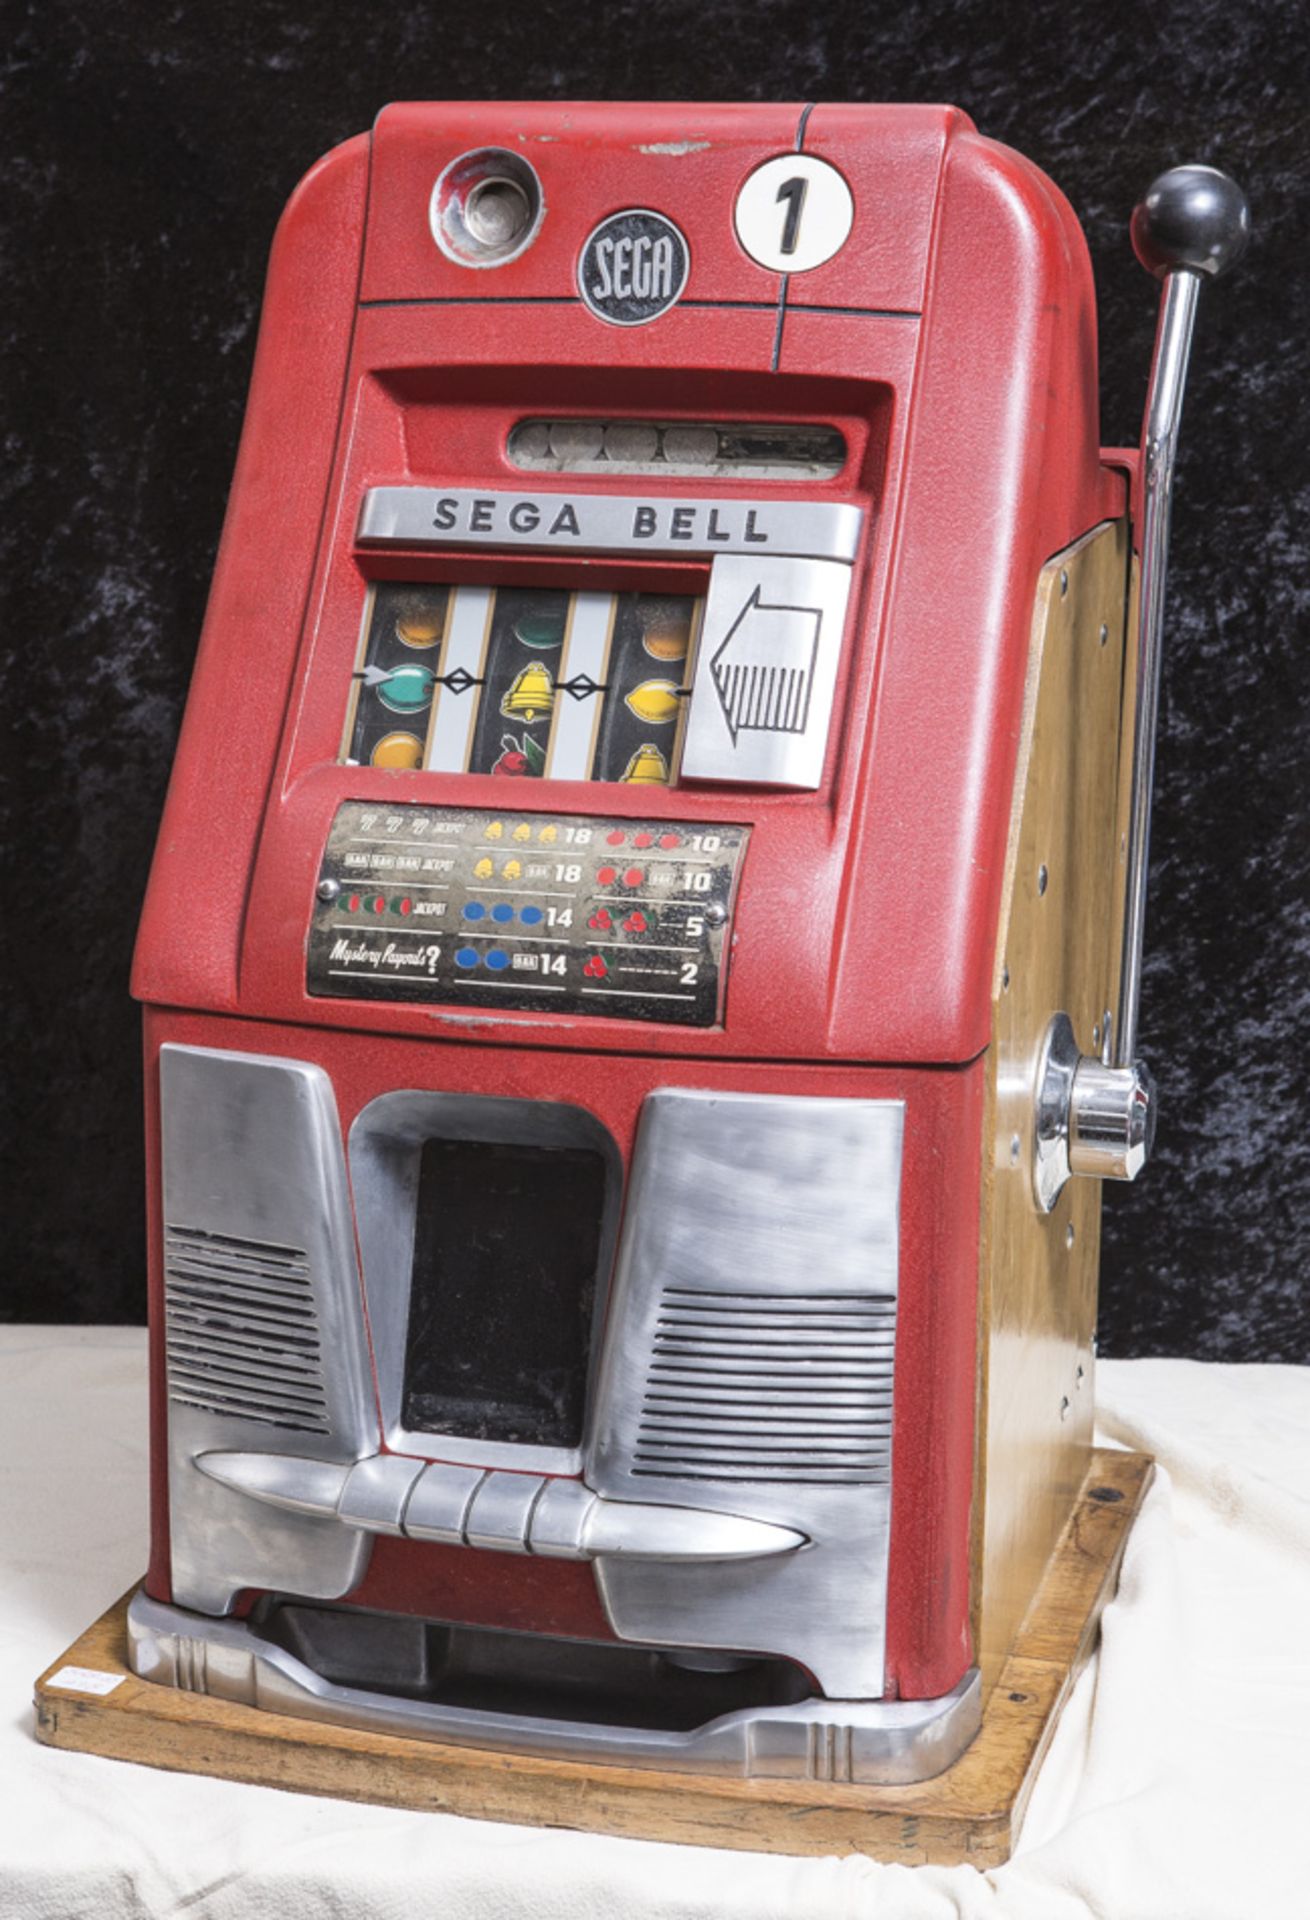 Spielautomat, Einarmiger Bandit, Sega Bell, DM-Einwurf, 1950/60er Jahre, Aluminium rot.Mindestpreis: